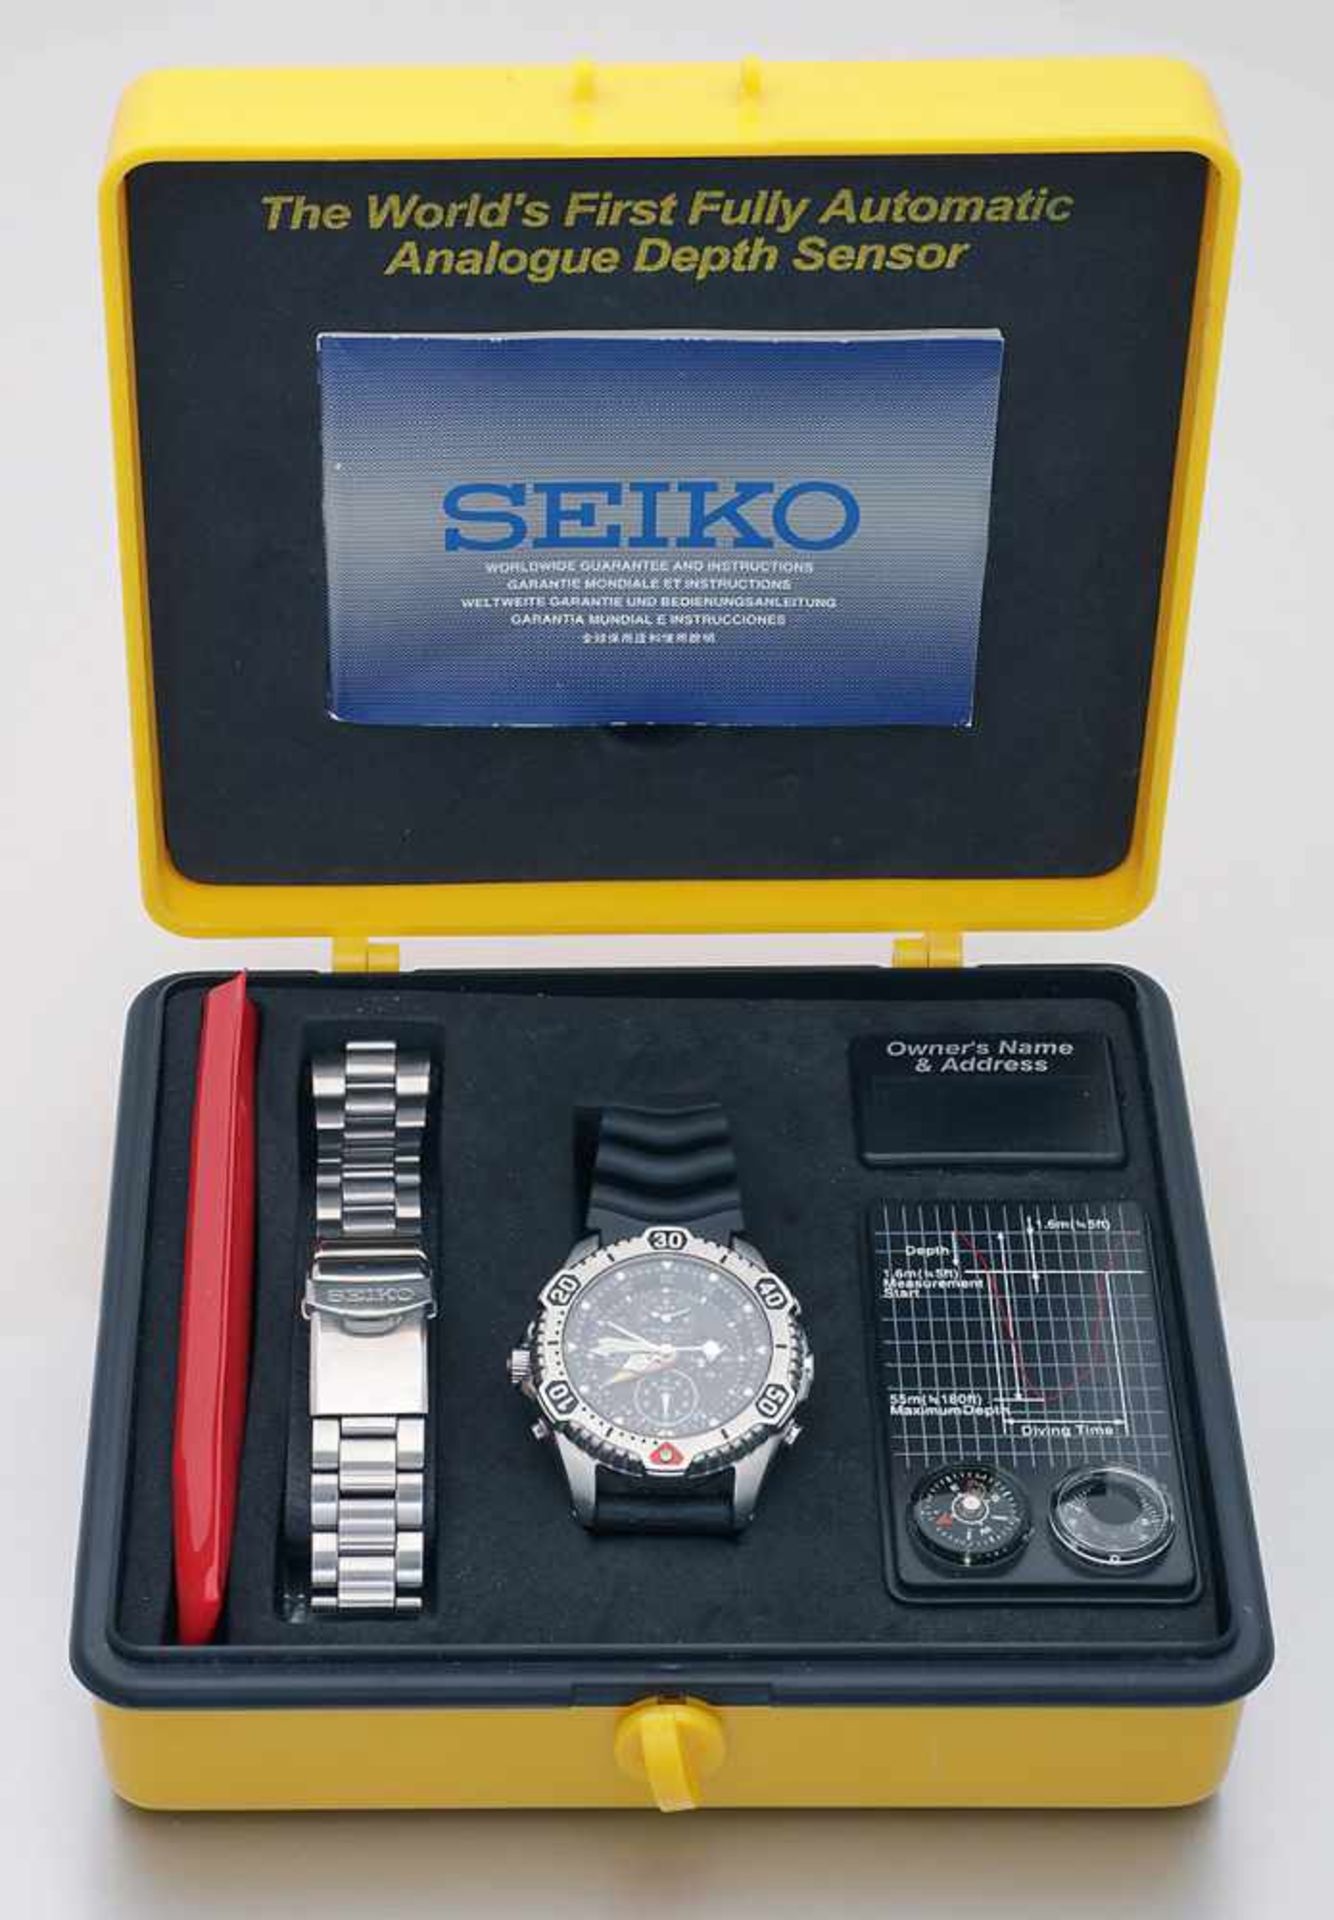 Weltweit erste vollautomatische Uhr mit Tiefensensorvon Seiko, sog. "Seiko Scuba Diver's" von 1997.